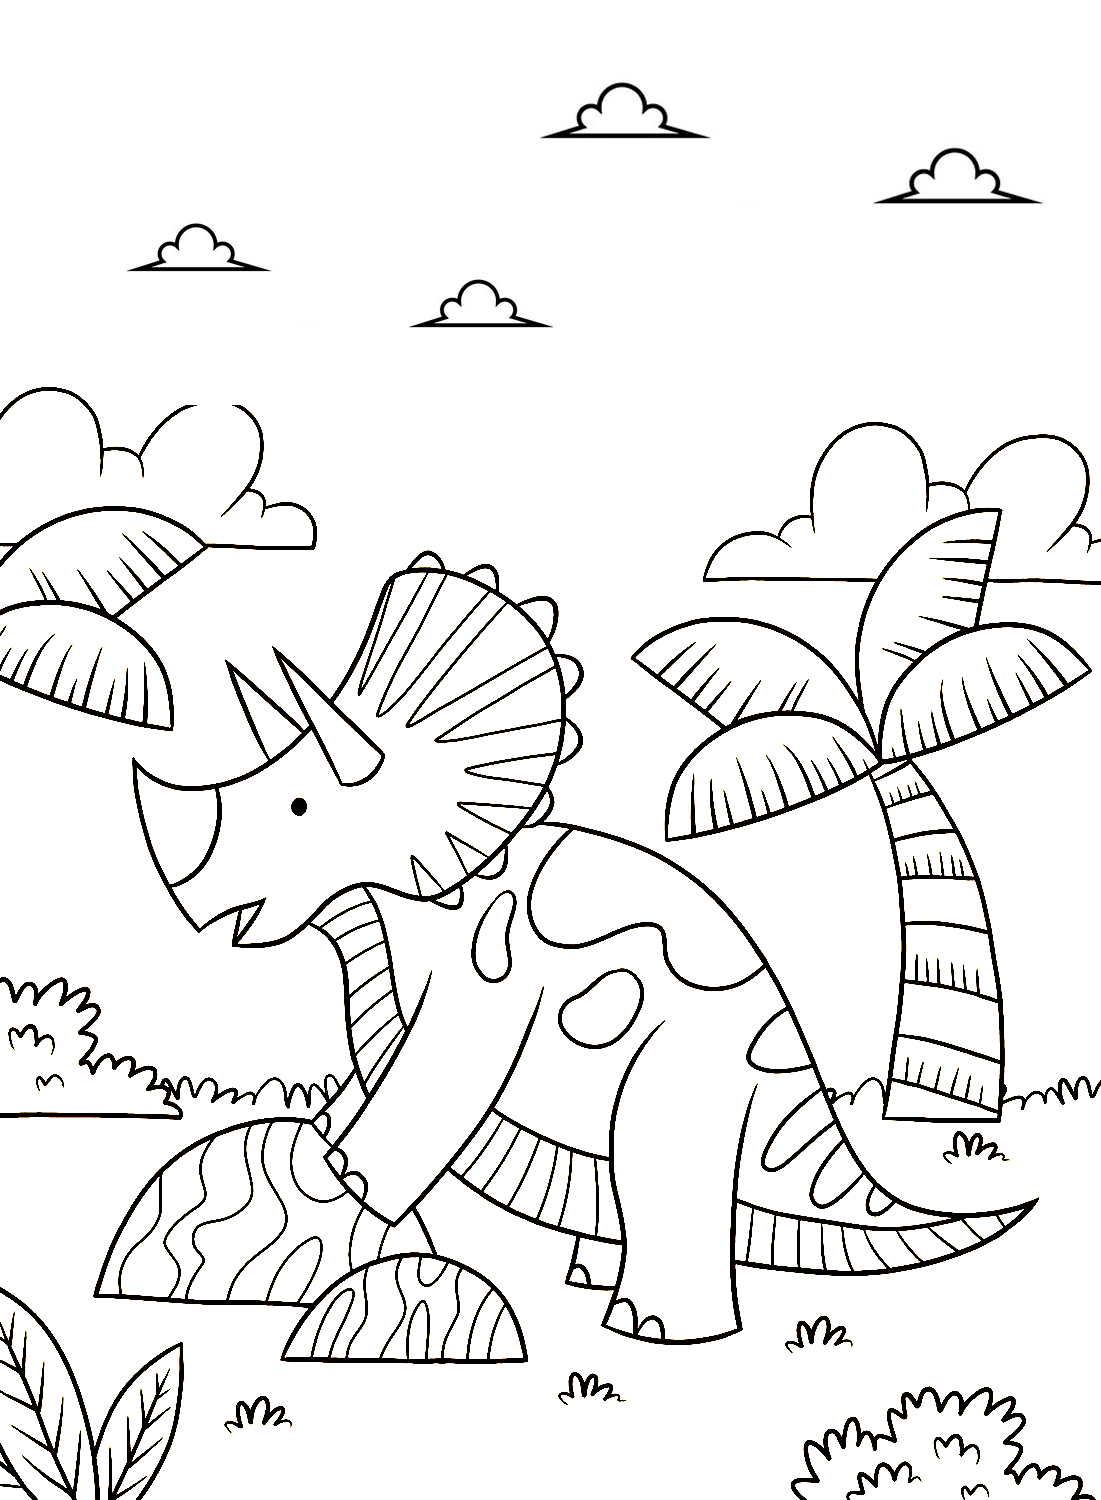 Triceratops kleurplaten om af te drukken